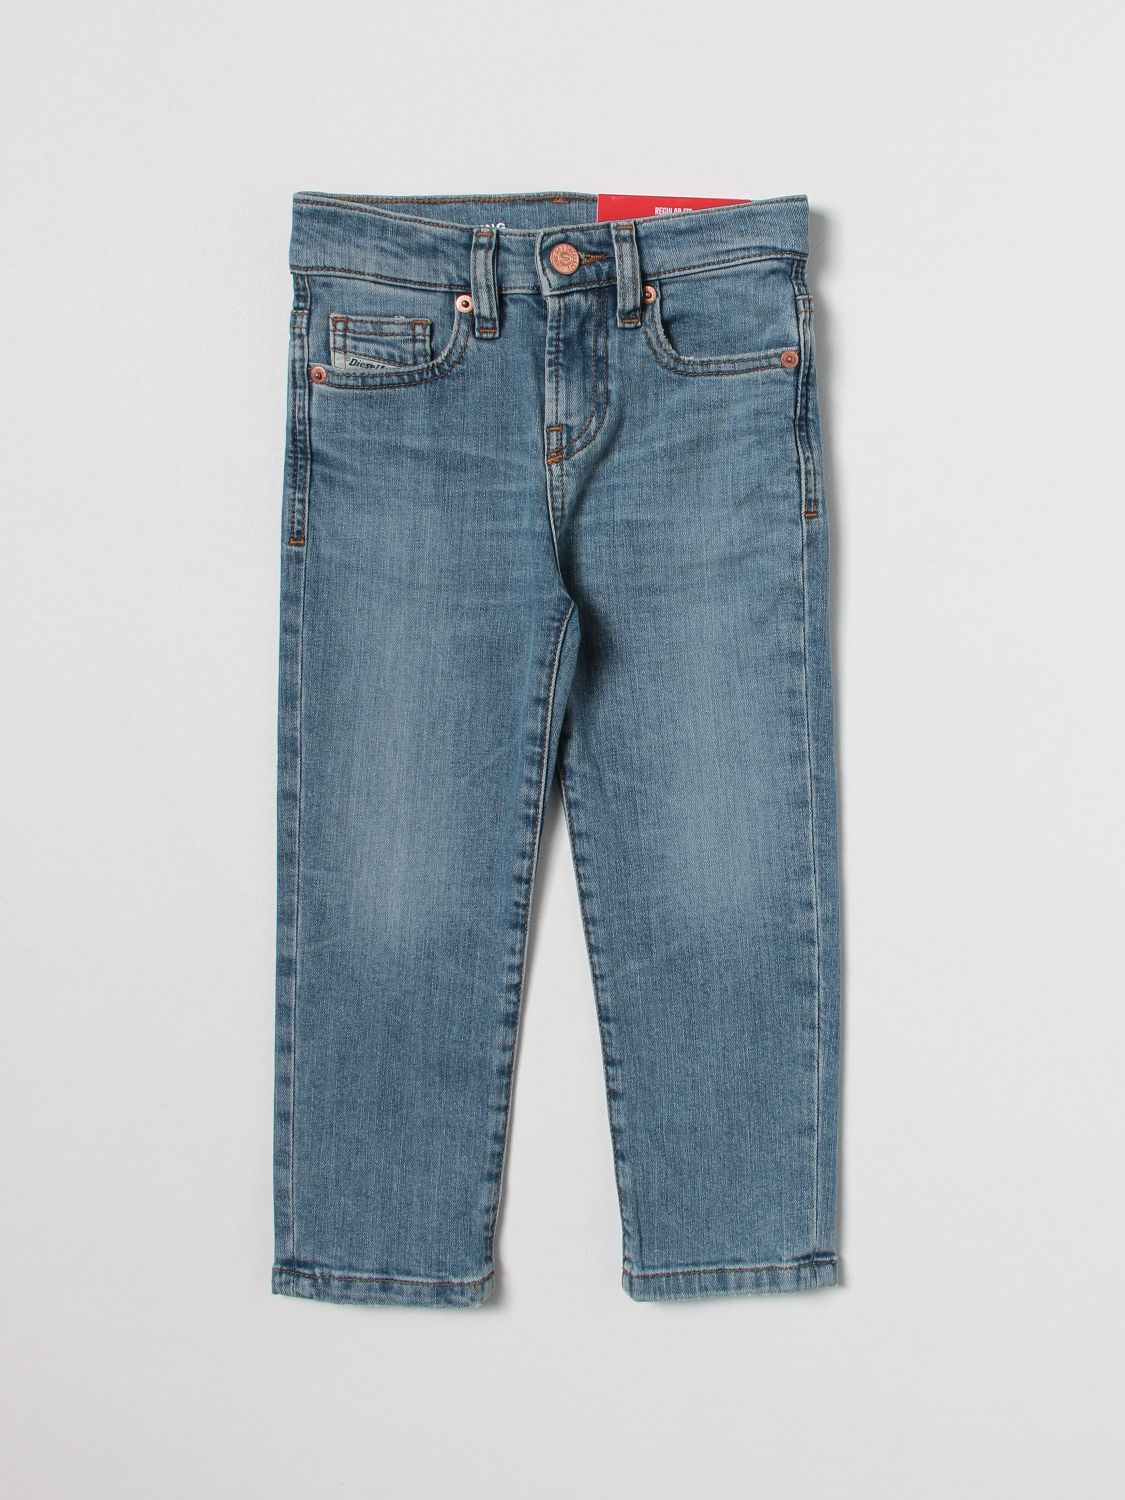 DIESEL: jeans for boys - Denim | Diesel jeans J00809KXBG7 online on